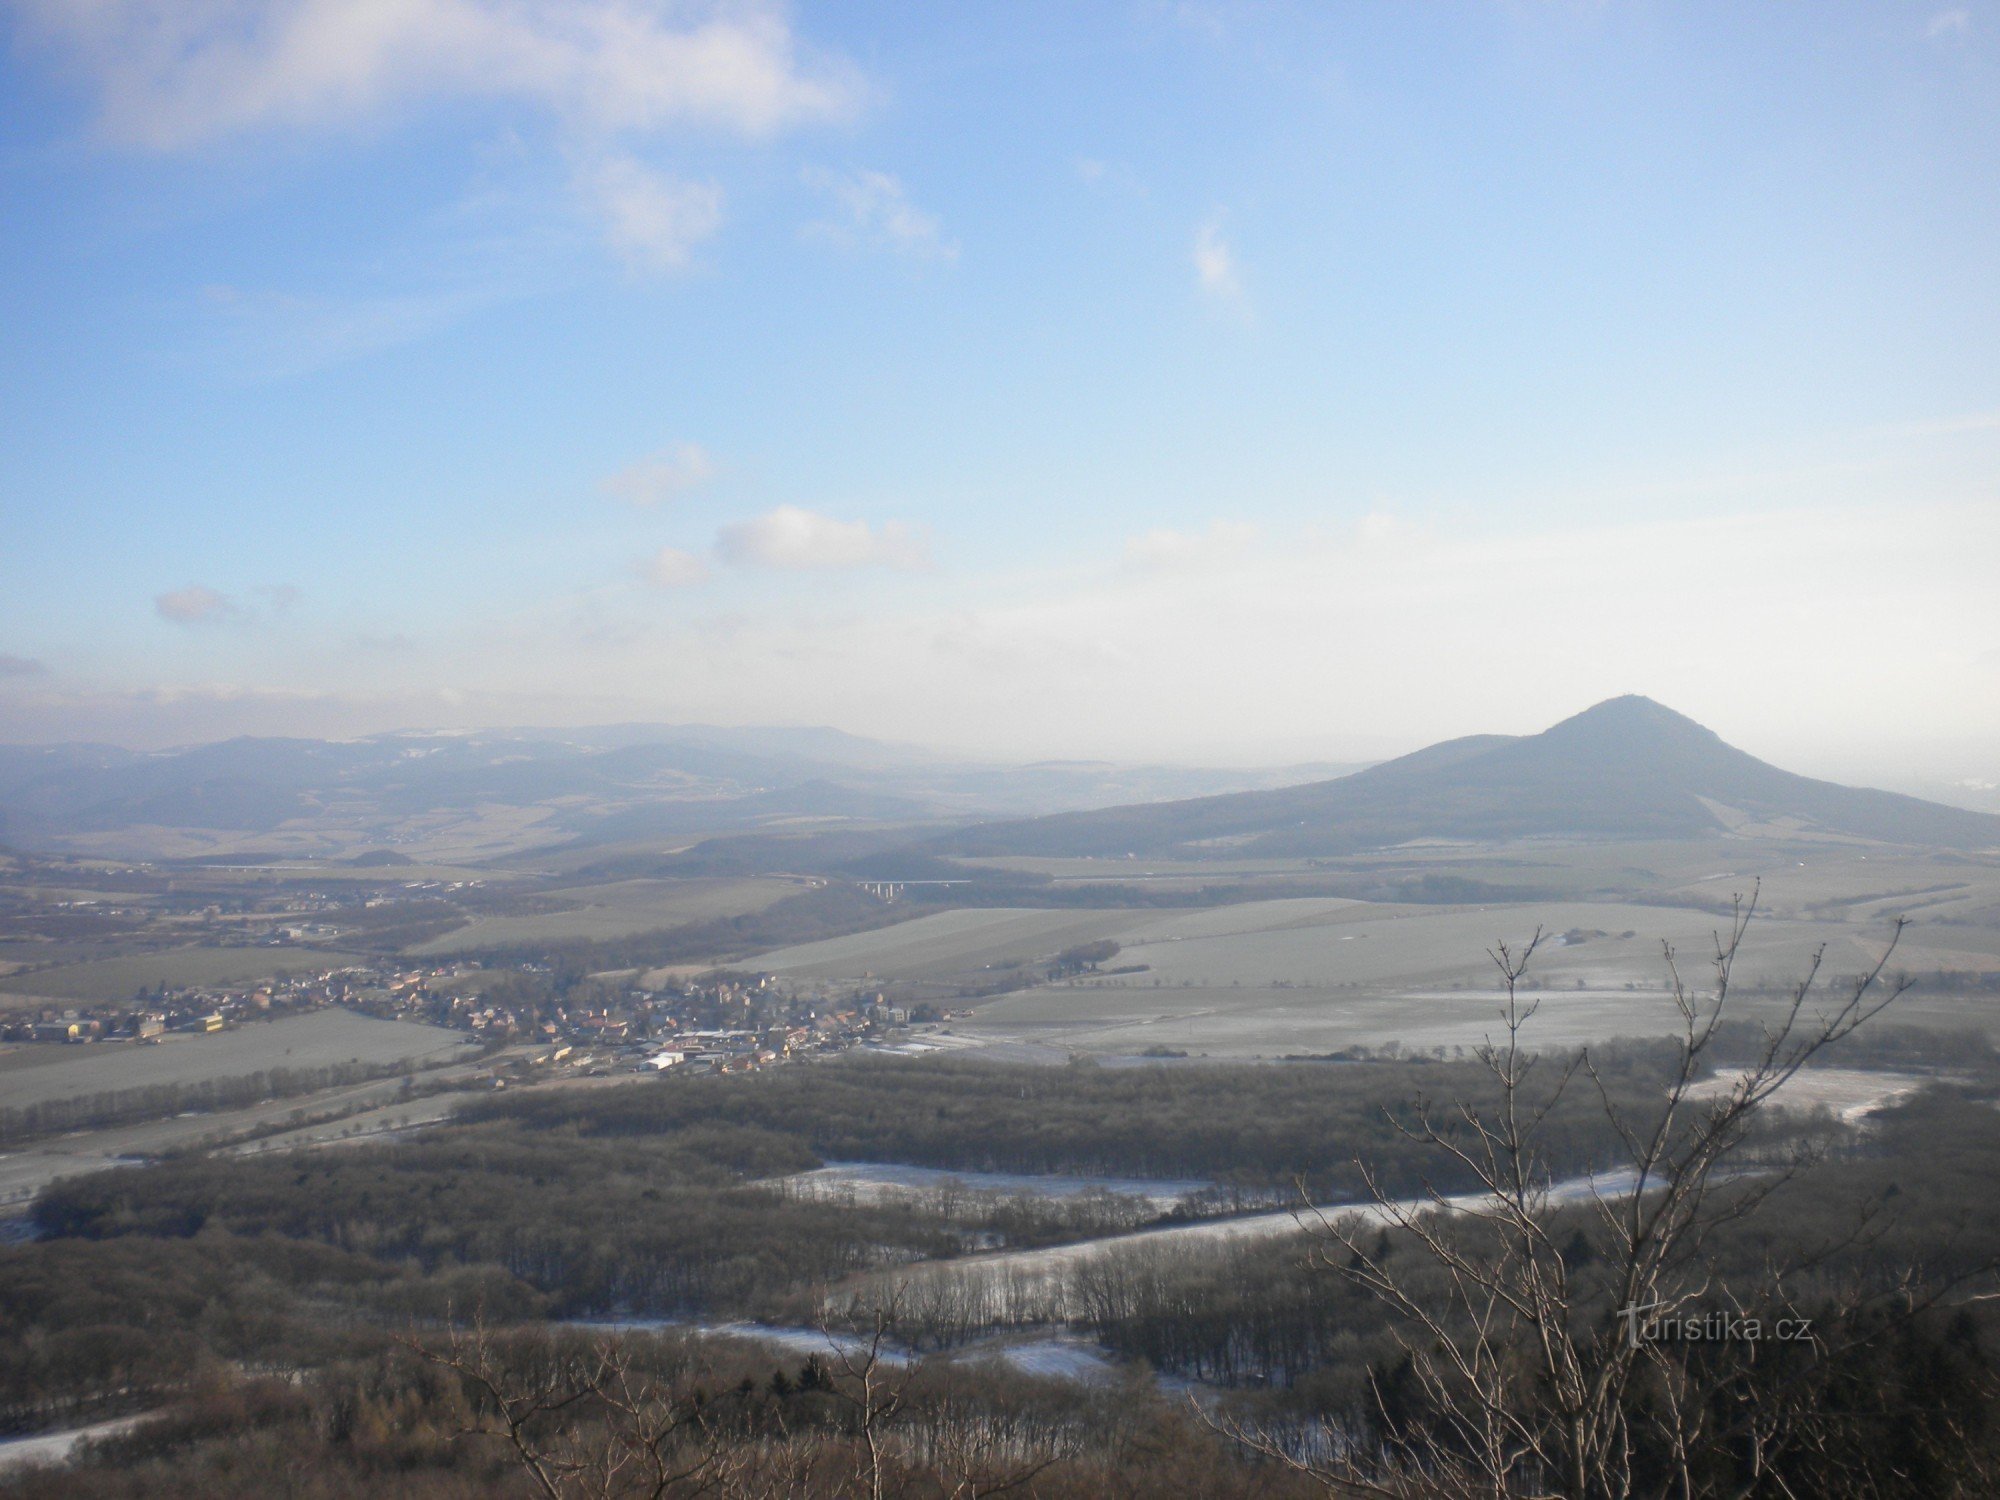 Blick auf die Region von der Burg Ostrý nach Osten. Lovoš-Hügel im Vordergrund.